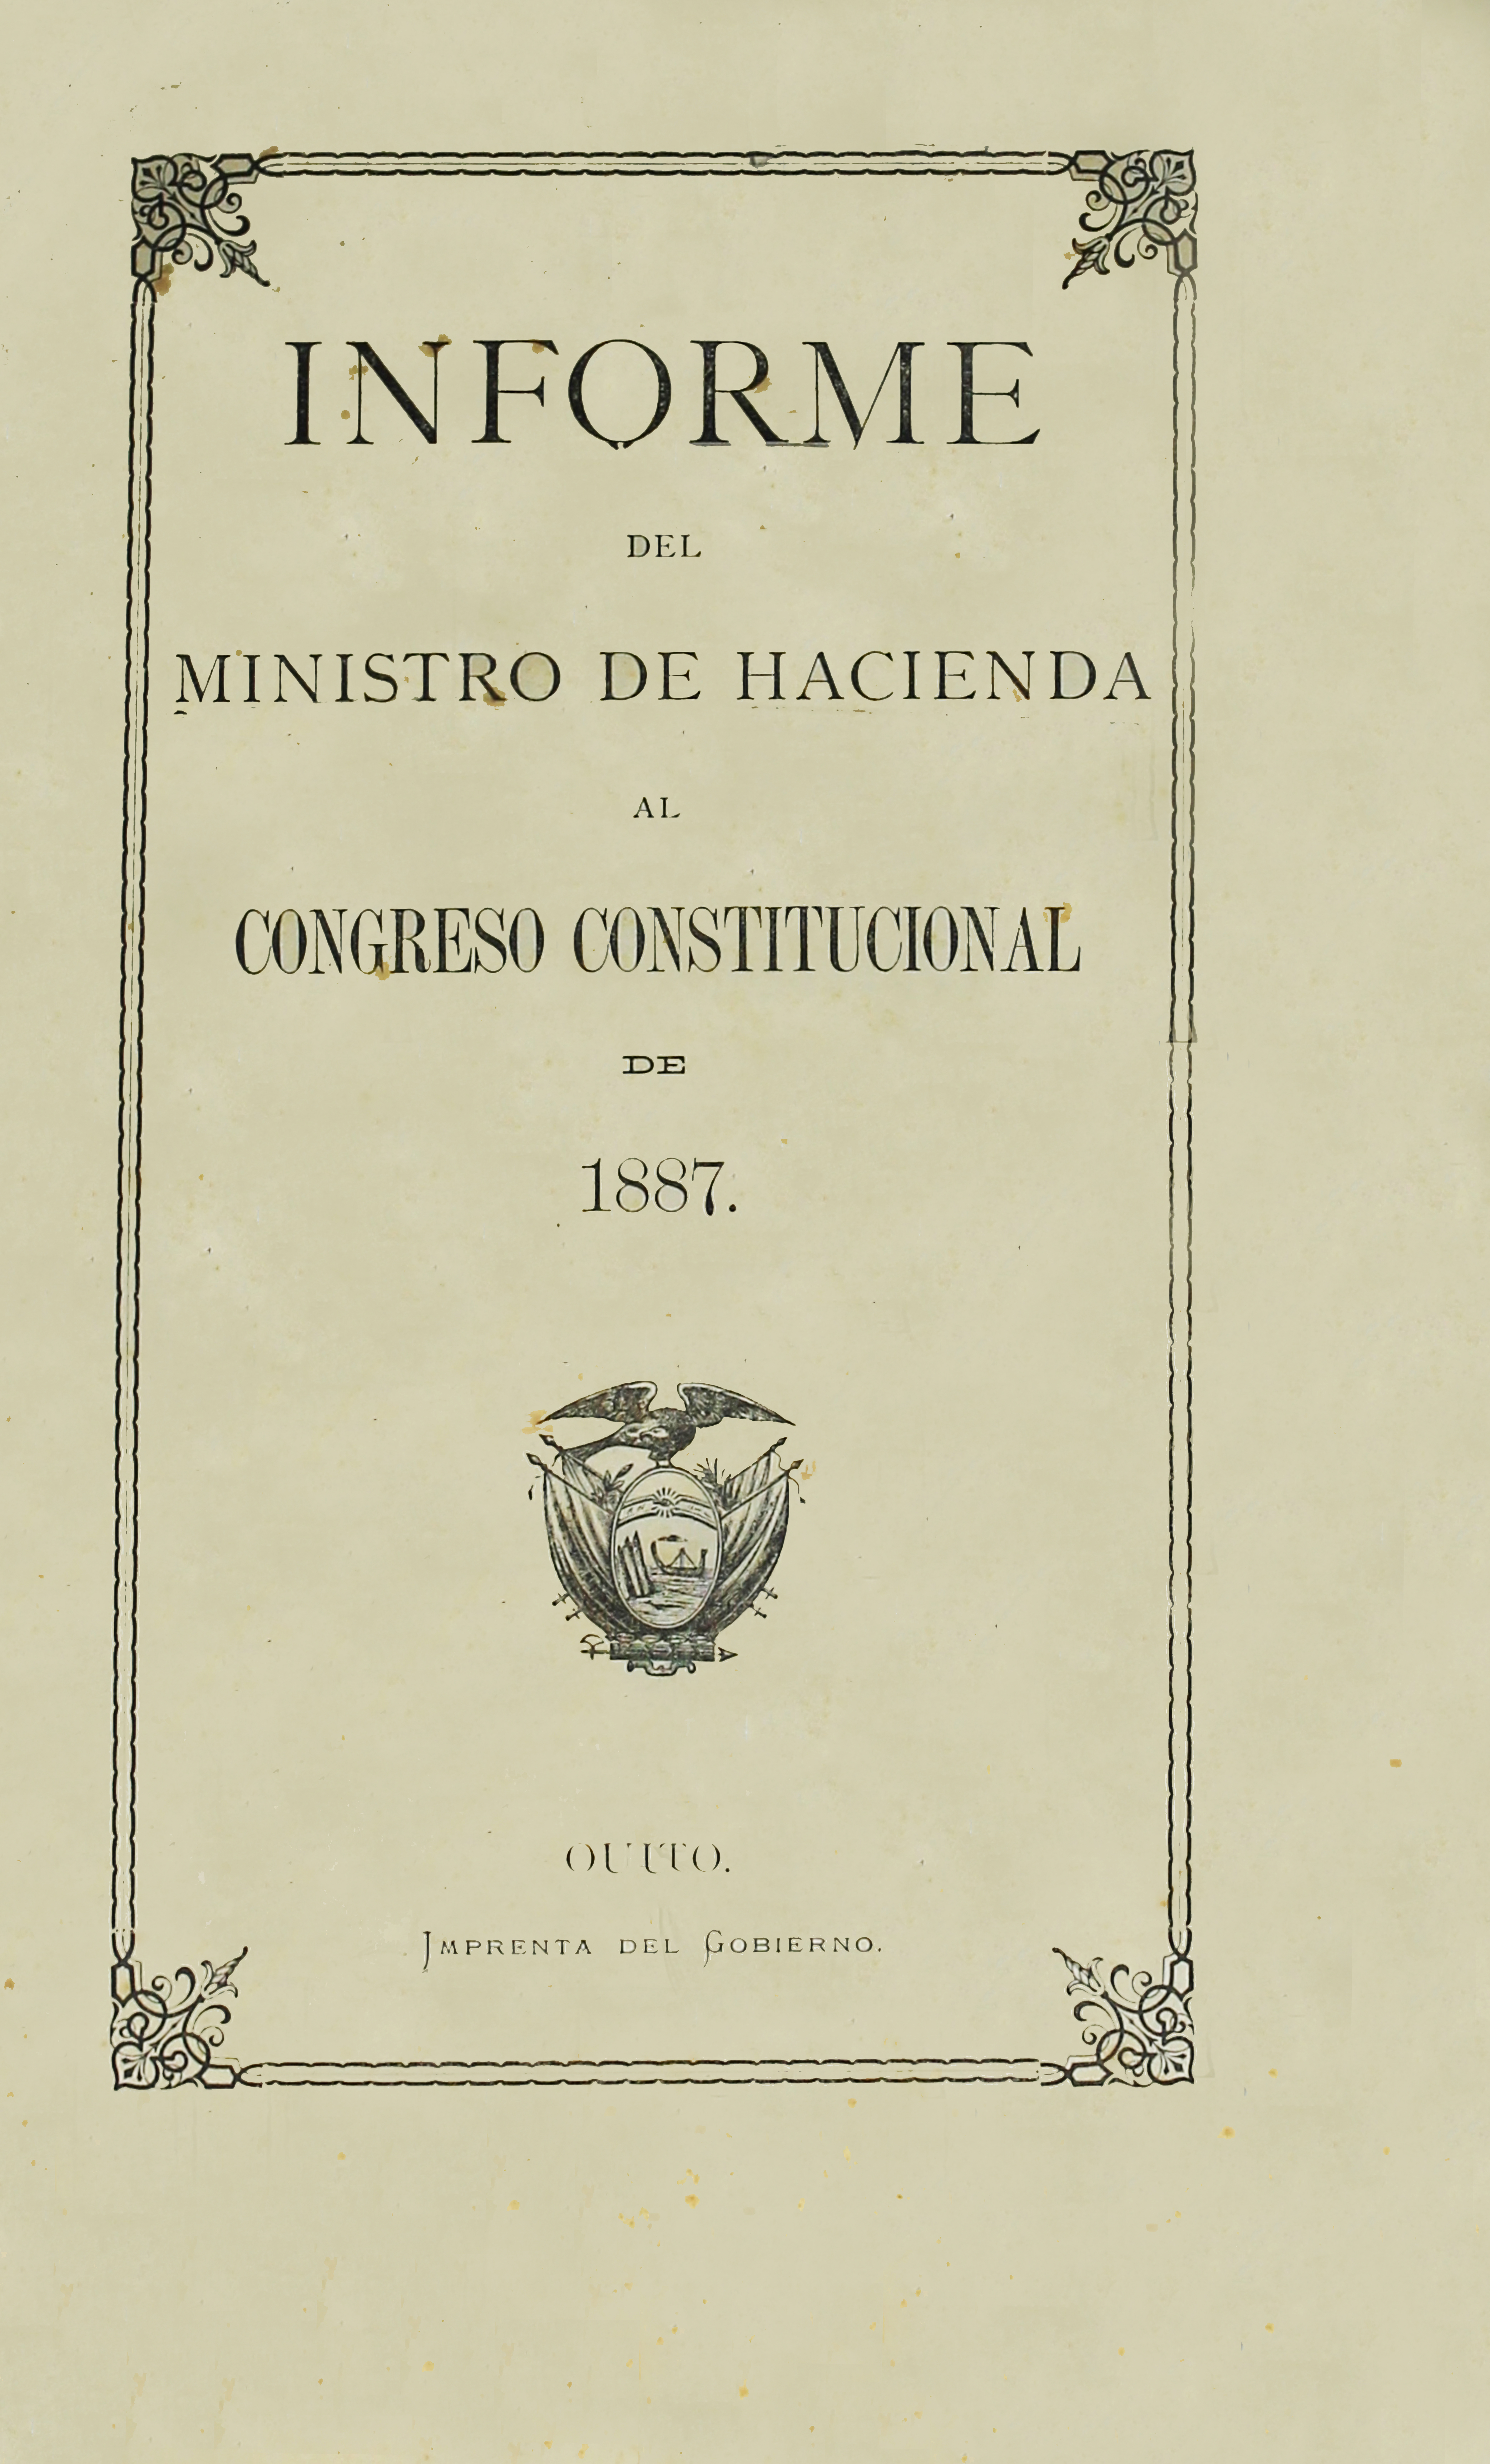 Informe del Ministro de Hacienda al Congreso Constitucional de 1887